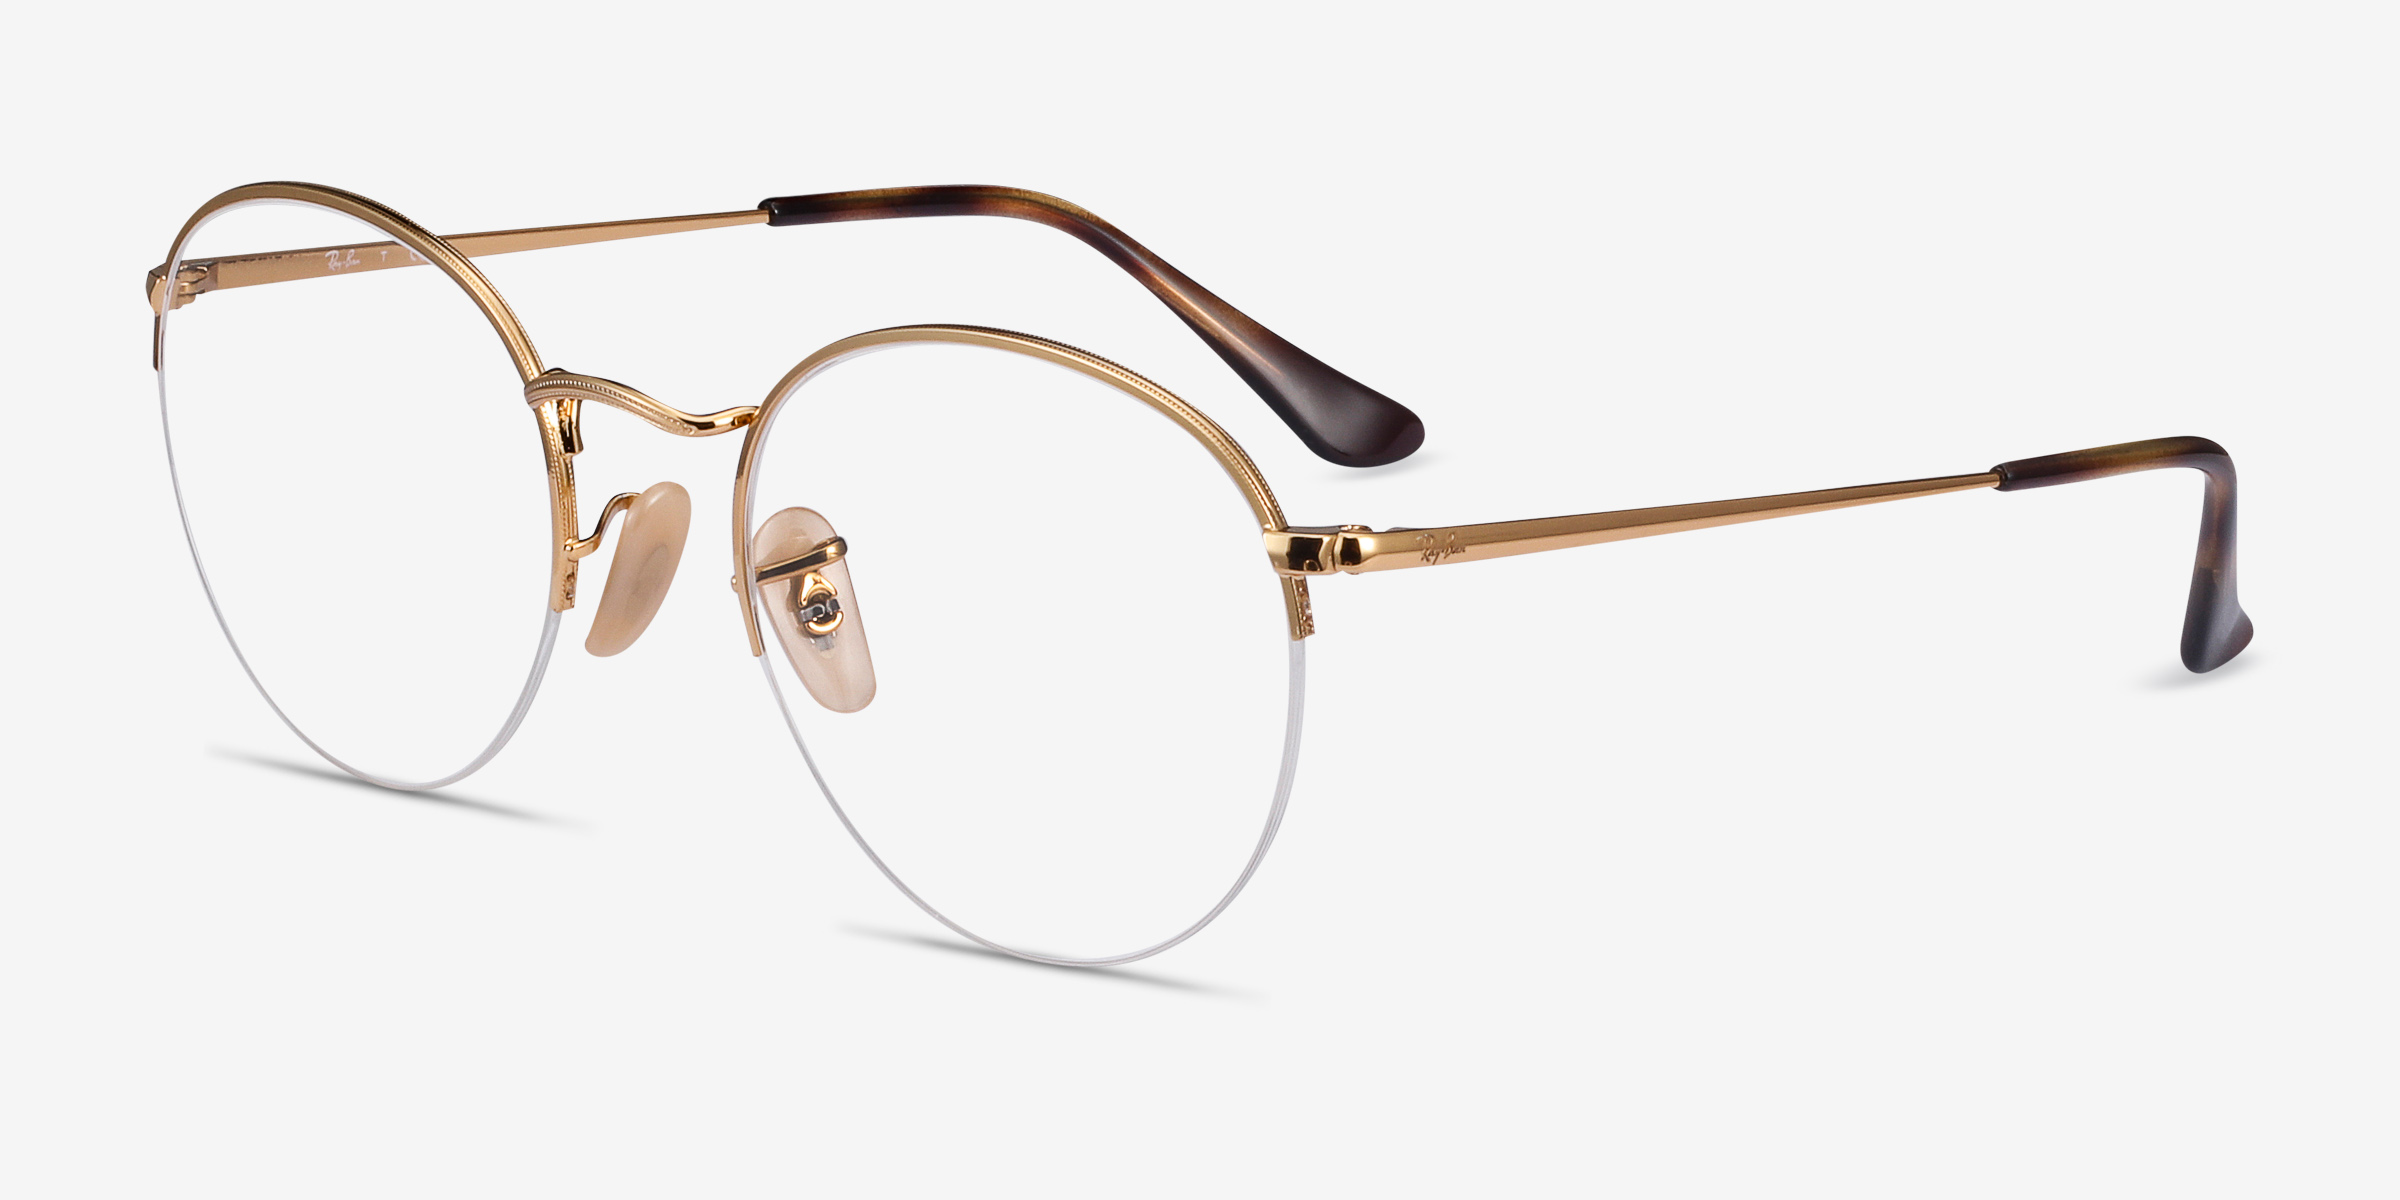 Ray-Ban RB3947V Round - Round Gold Frame Eyeglasses | Eyebuydirect